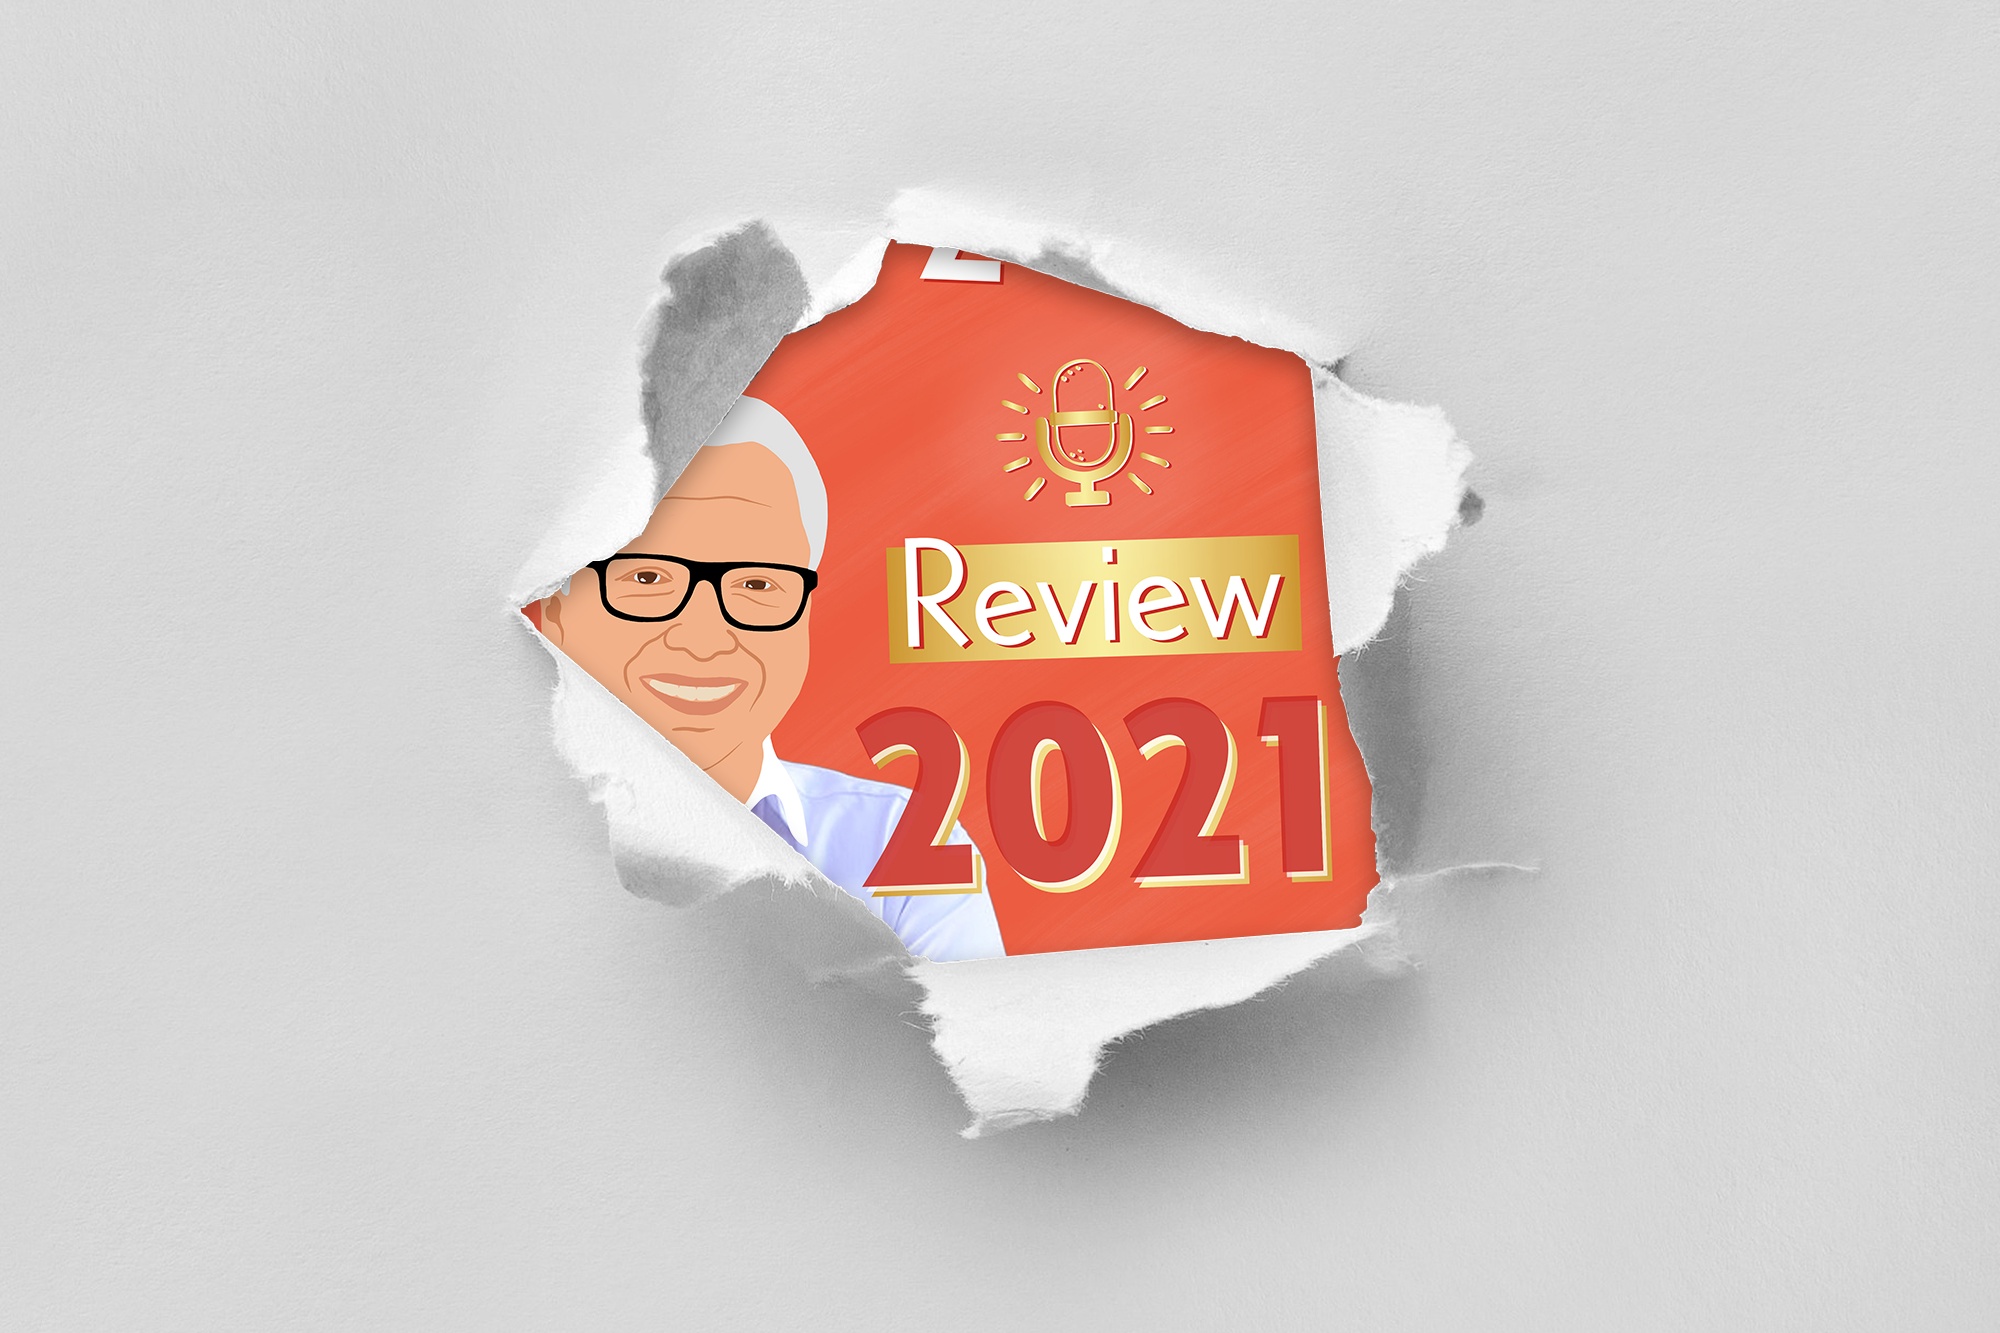 Review 2021: Micha Pallesche – Digitale Bildung ist möglich!